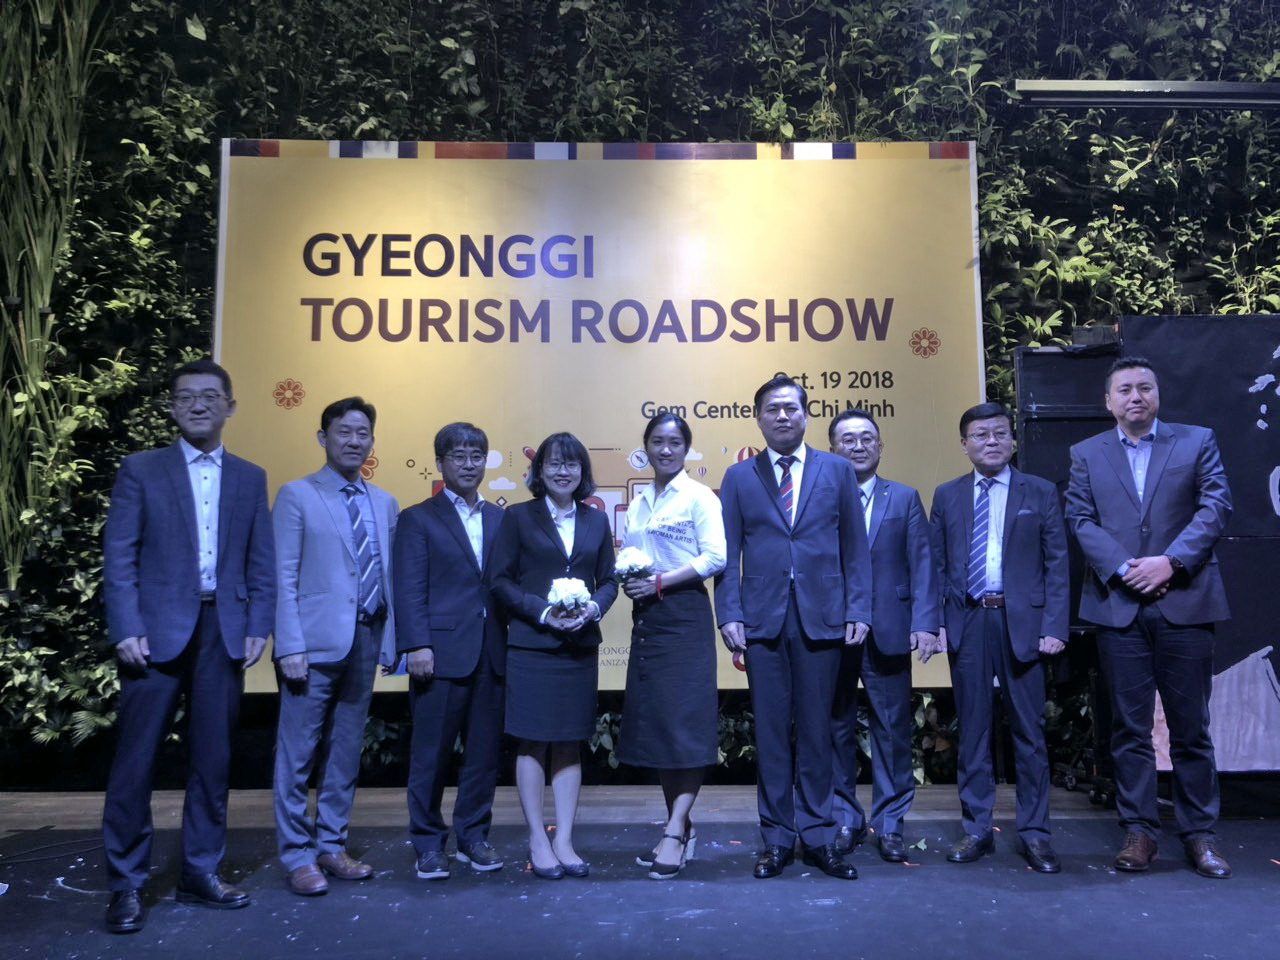 Hội thảo giới thiệu du lịch tỉnh Gyeonggi - Gyeonggi Tourism Roadshow